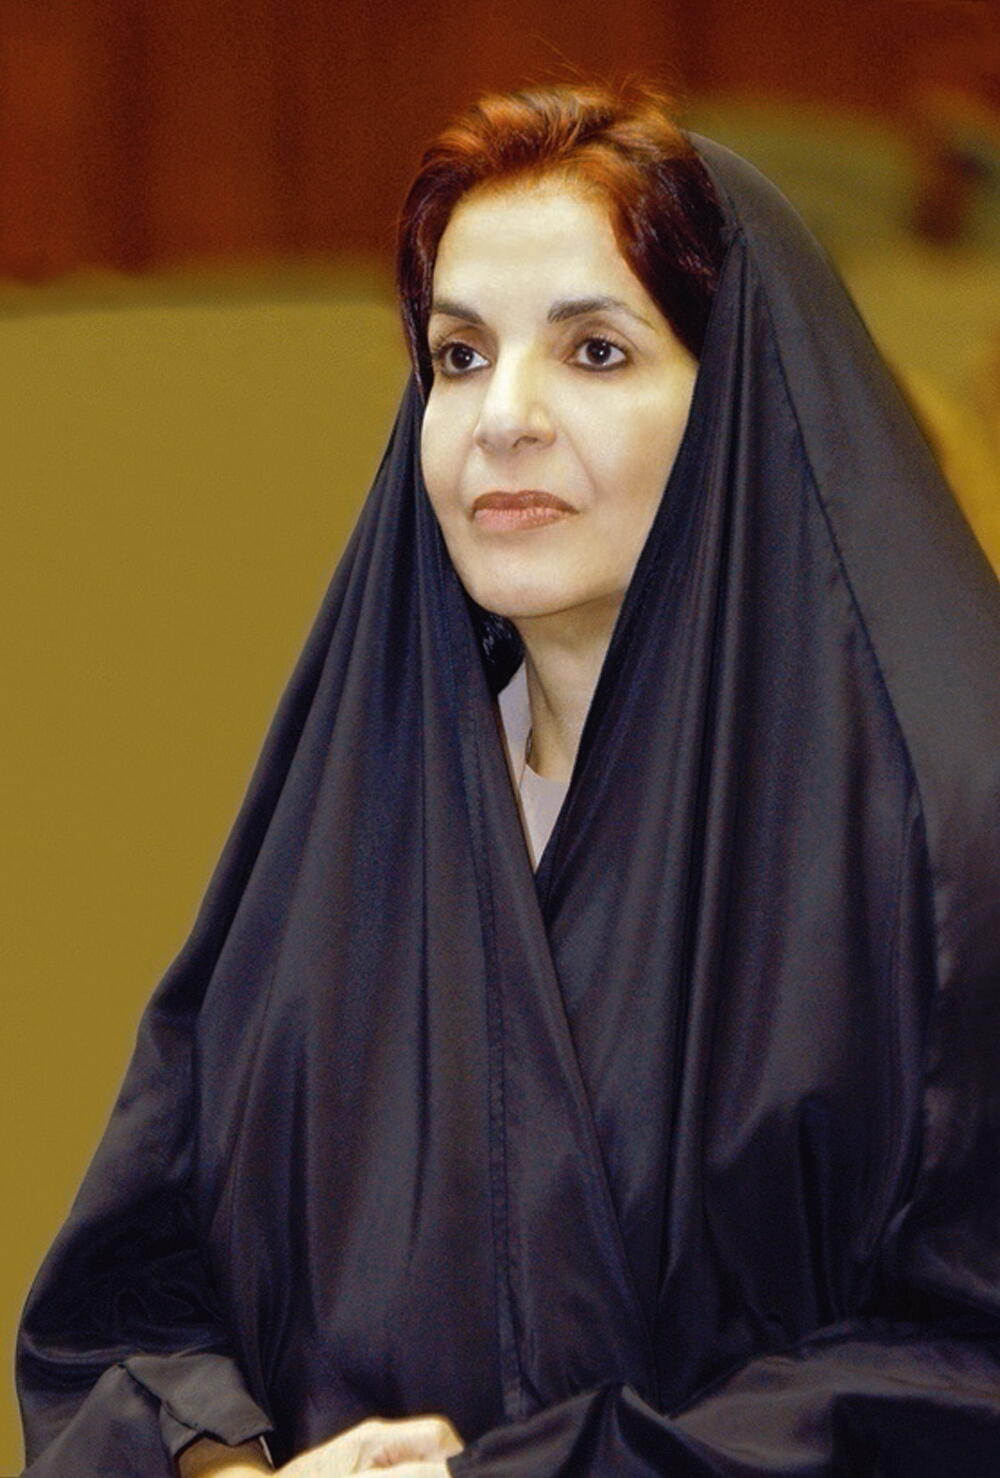 مجلس العام للمرأة يعقد ندوة بمشاركة مجلس المناقصات والمزايدات لمشاركة المرأة البحرينية